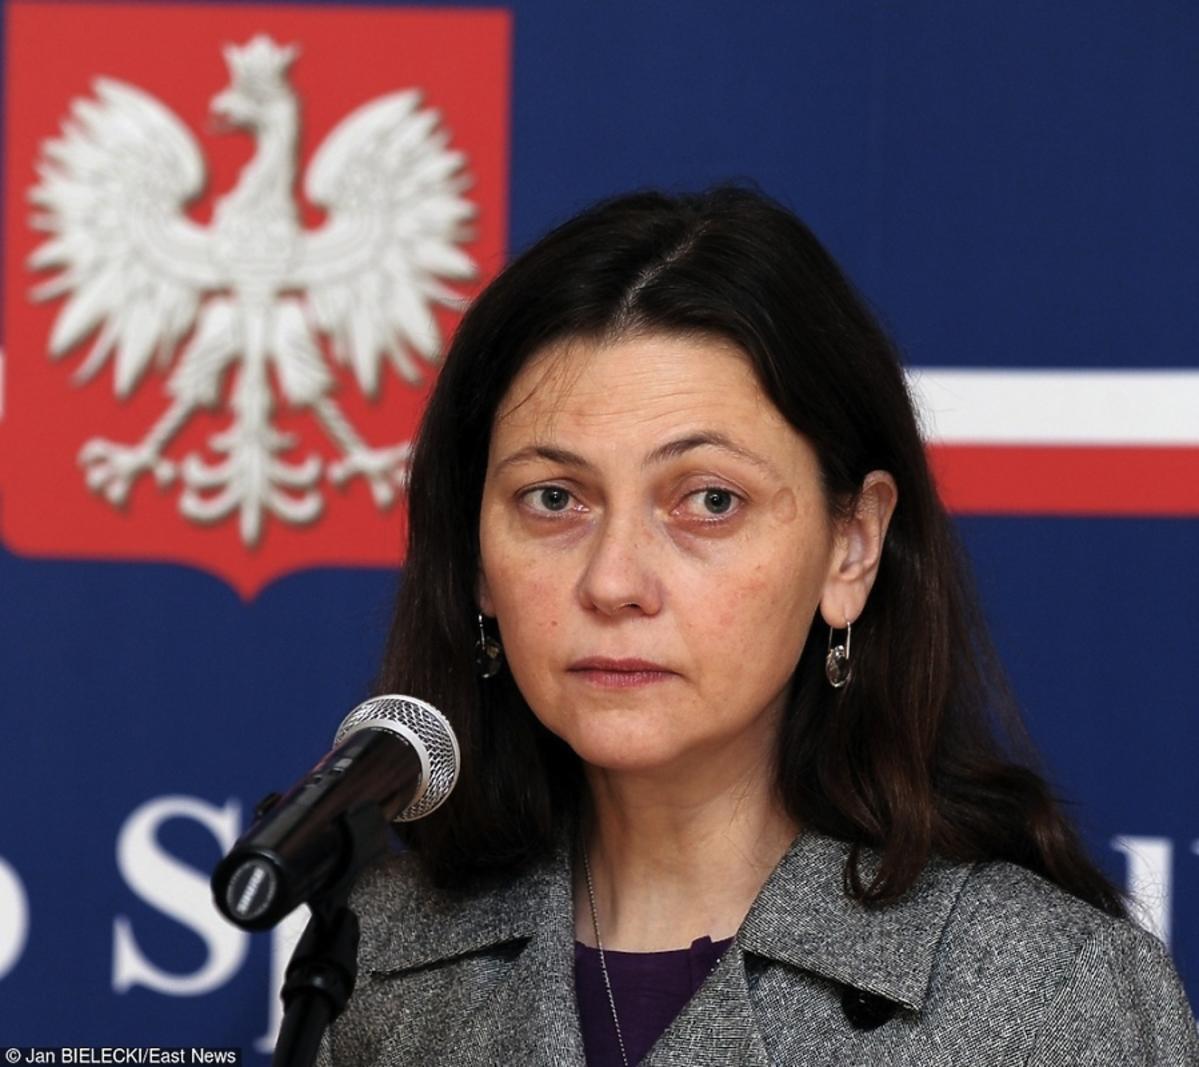 Monika Zbrojewska, wiceminister sprawiedliwości